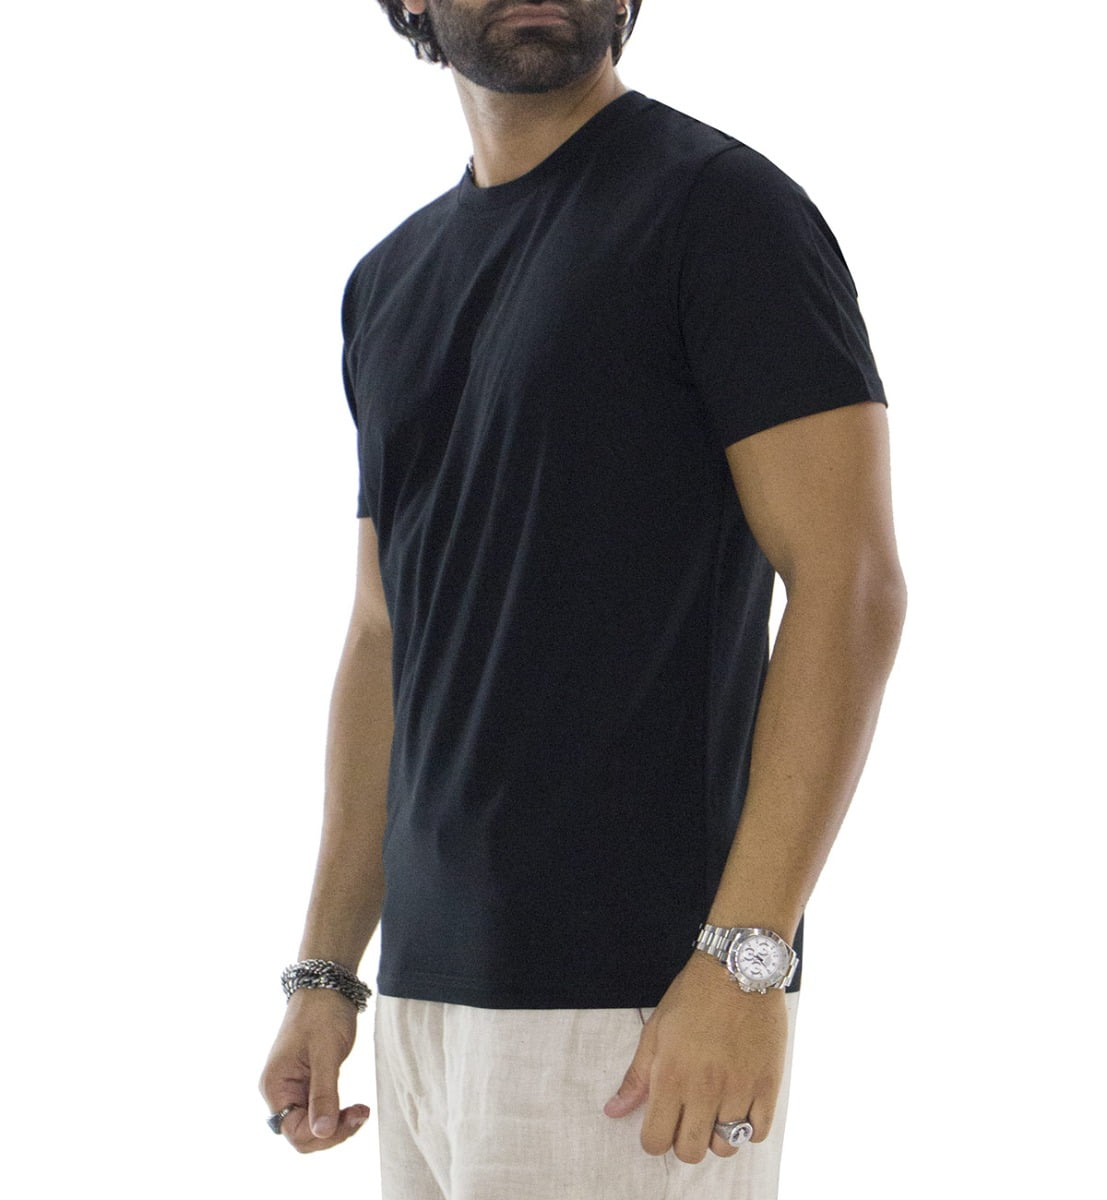 T-shirt da uomo in cotone organico tinta unita nera regular fit elasticizzata girocollo